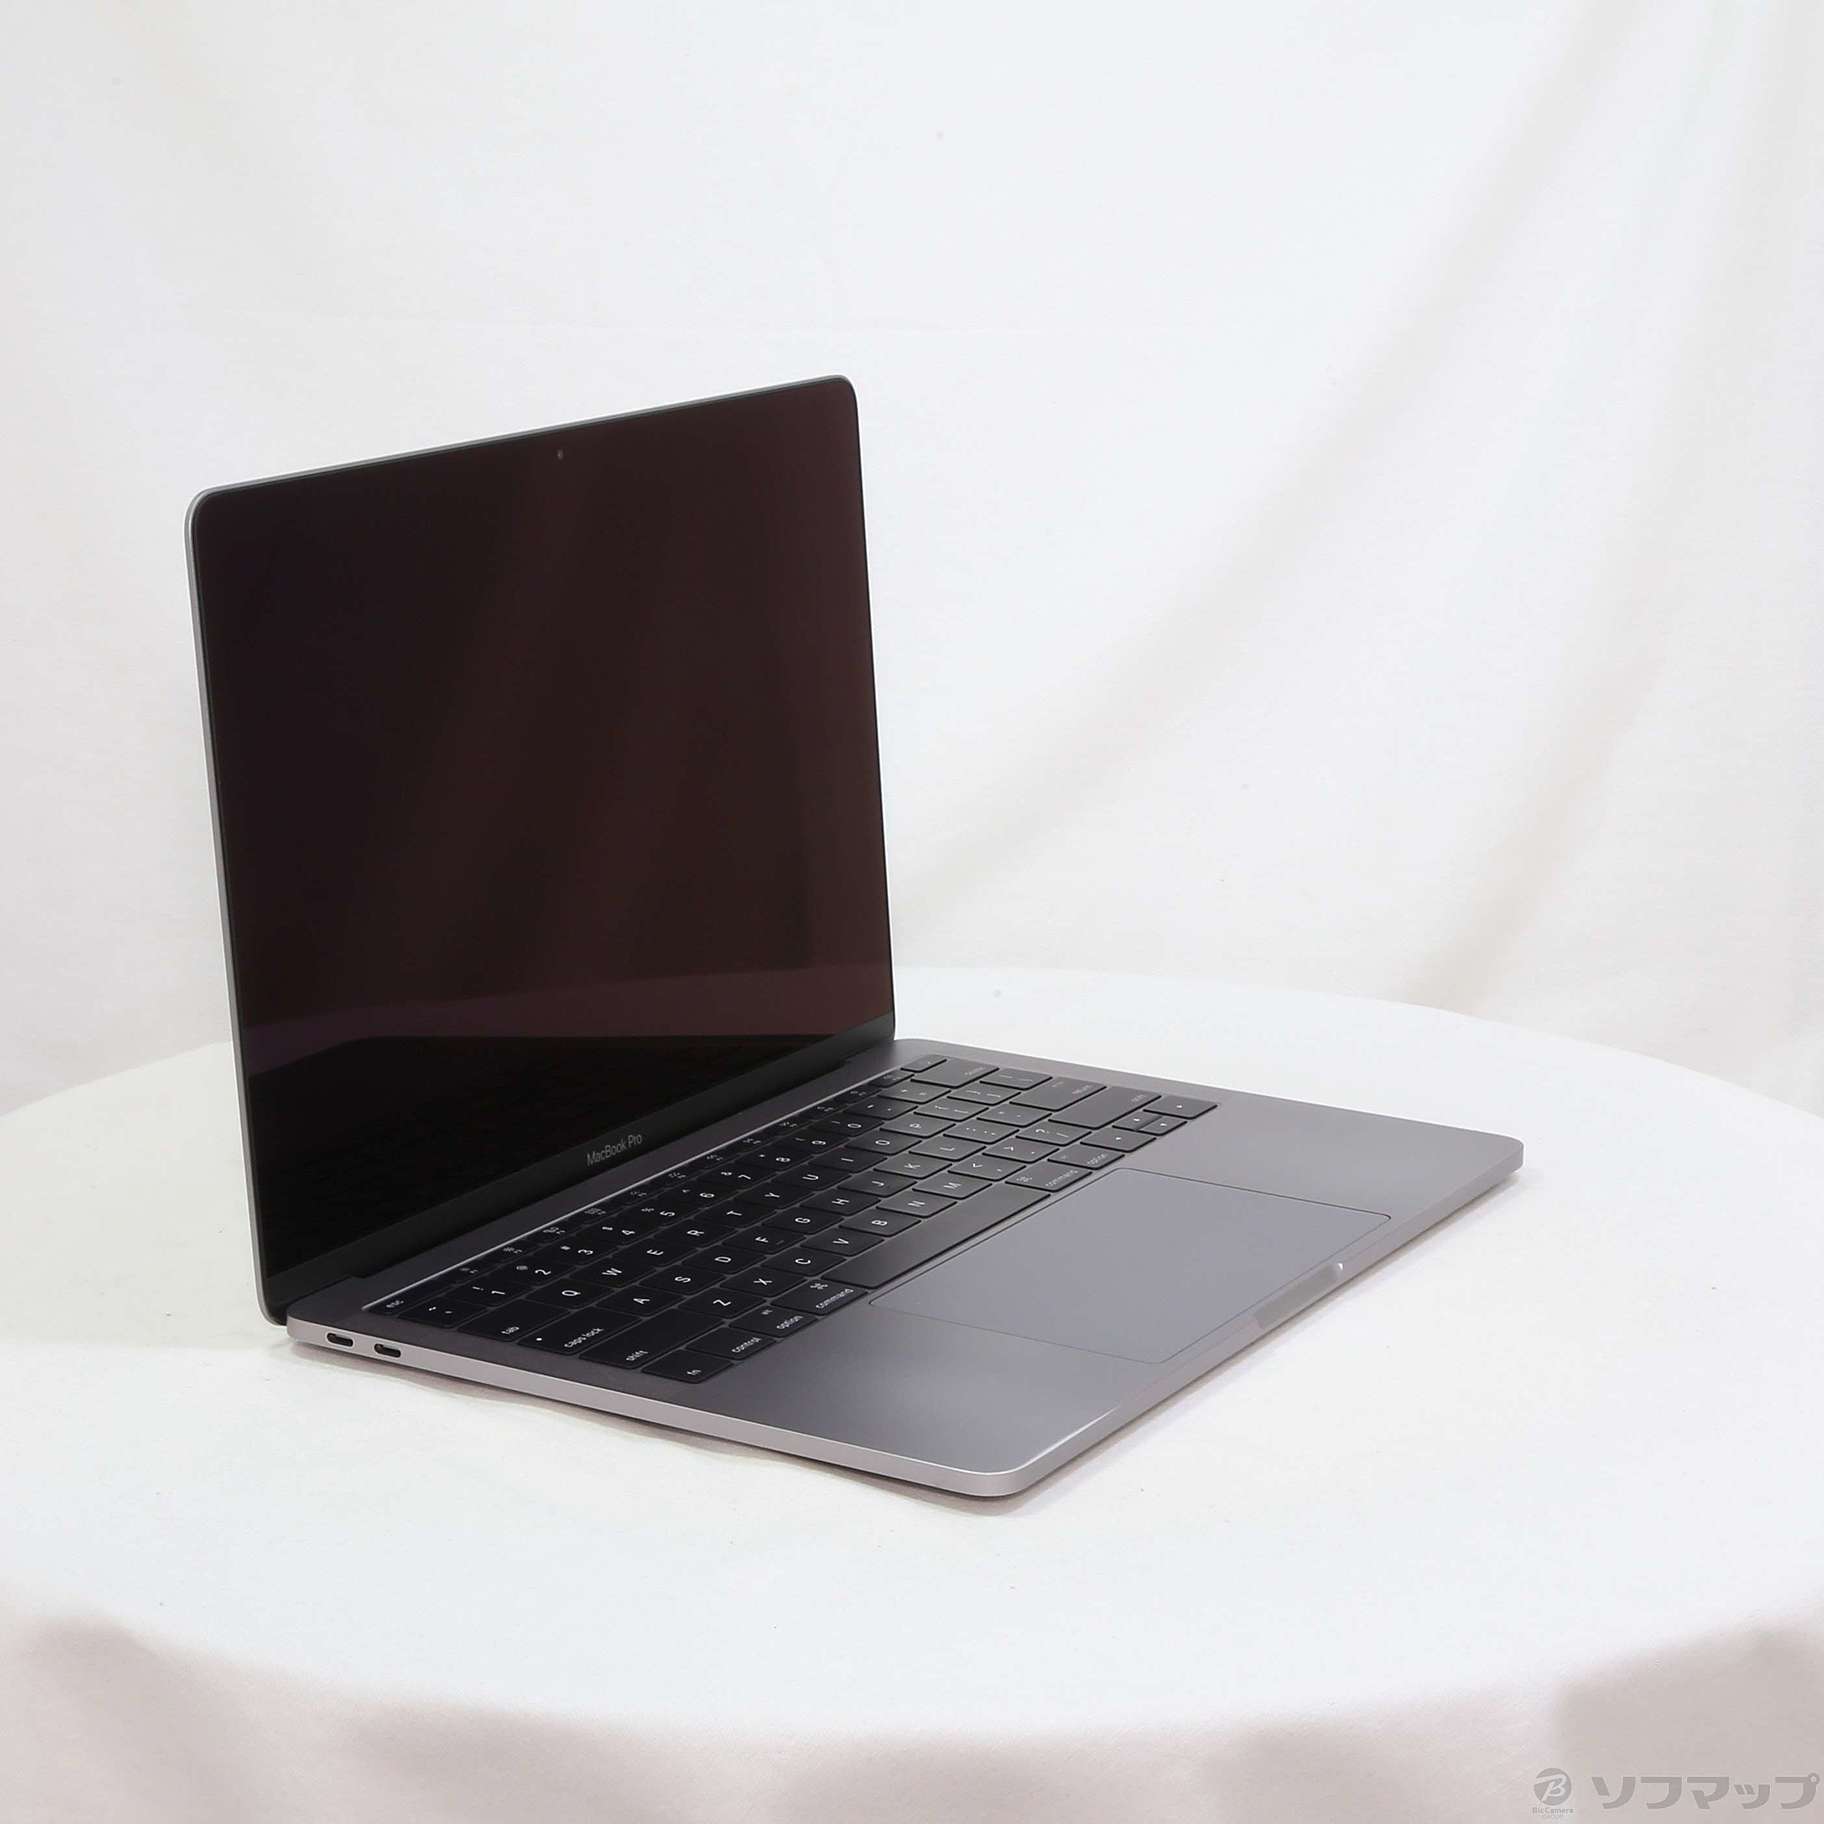 ☆超美品☆Apple MacBook Pro 13-inch MLL42J/A